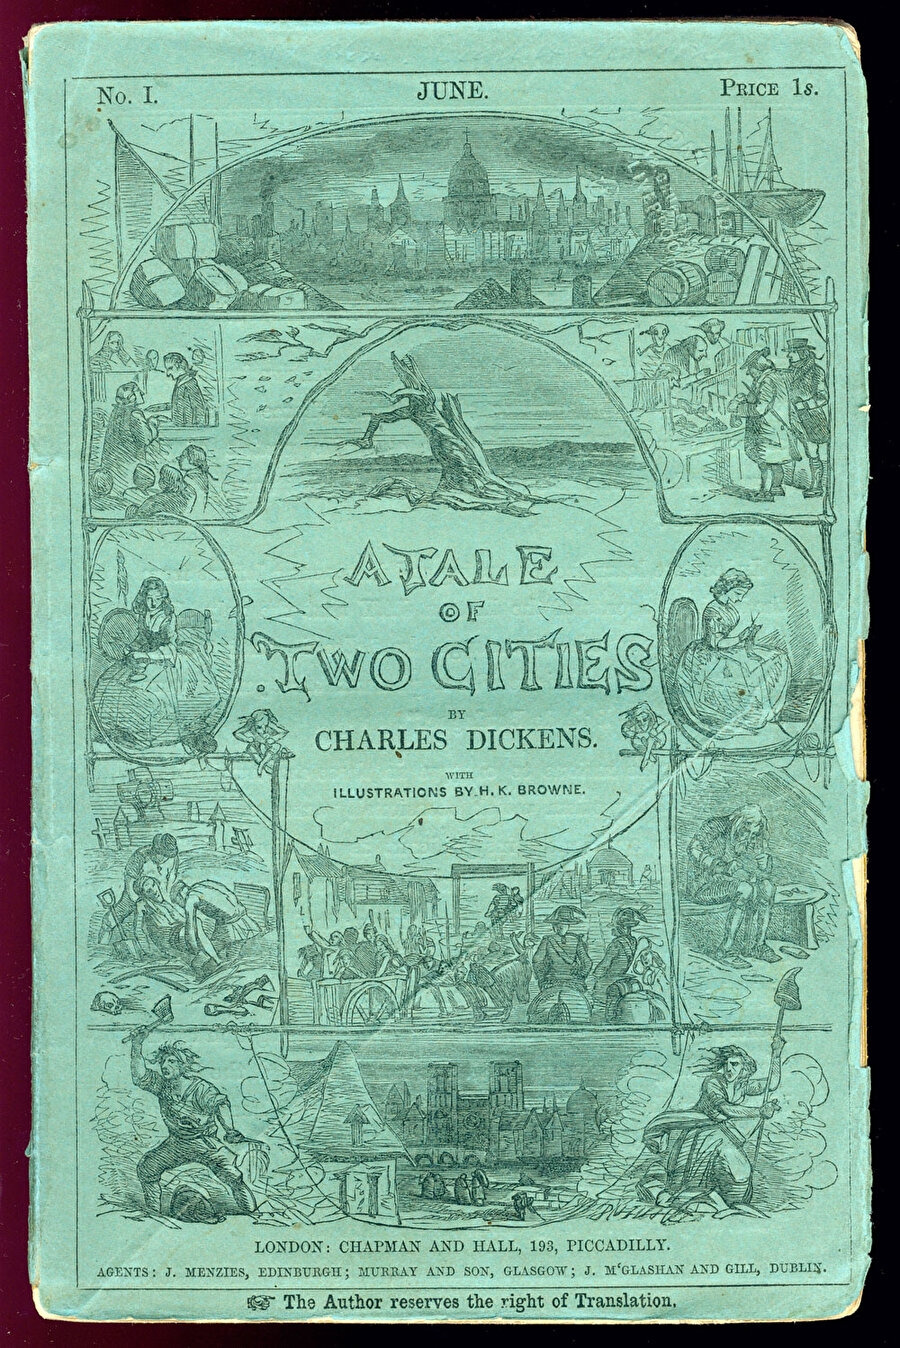 Charles Dickens- İki Şehrin Hikayesi
Dünya edebiyatının en önemli klasik yapıtlarından biri olan İki Şehrin Hikâyesi, Paris ve Londra arasında gelişen olay kurgusuyla, tarihin en hareketli anlarından birinin, Fransız Devrimi'nin ekseni etrafında biçimlenir. 

Edebiyat dünyasının “Dickens'ın en büyük tarihî romanı” olarak, yazarın kendisinin ise “Yazdığım en iyi hikâye” diye tanımladıkları yapıt, Fransız Devrimi ile Terör Dönemi kargaşasında yaşamak zorunda kalan bir grup insanın özel yaşamlarını aktarırken, dönemin acımasız toplumsal koşullarını da irdeler.
